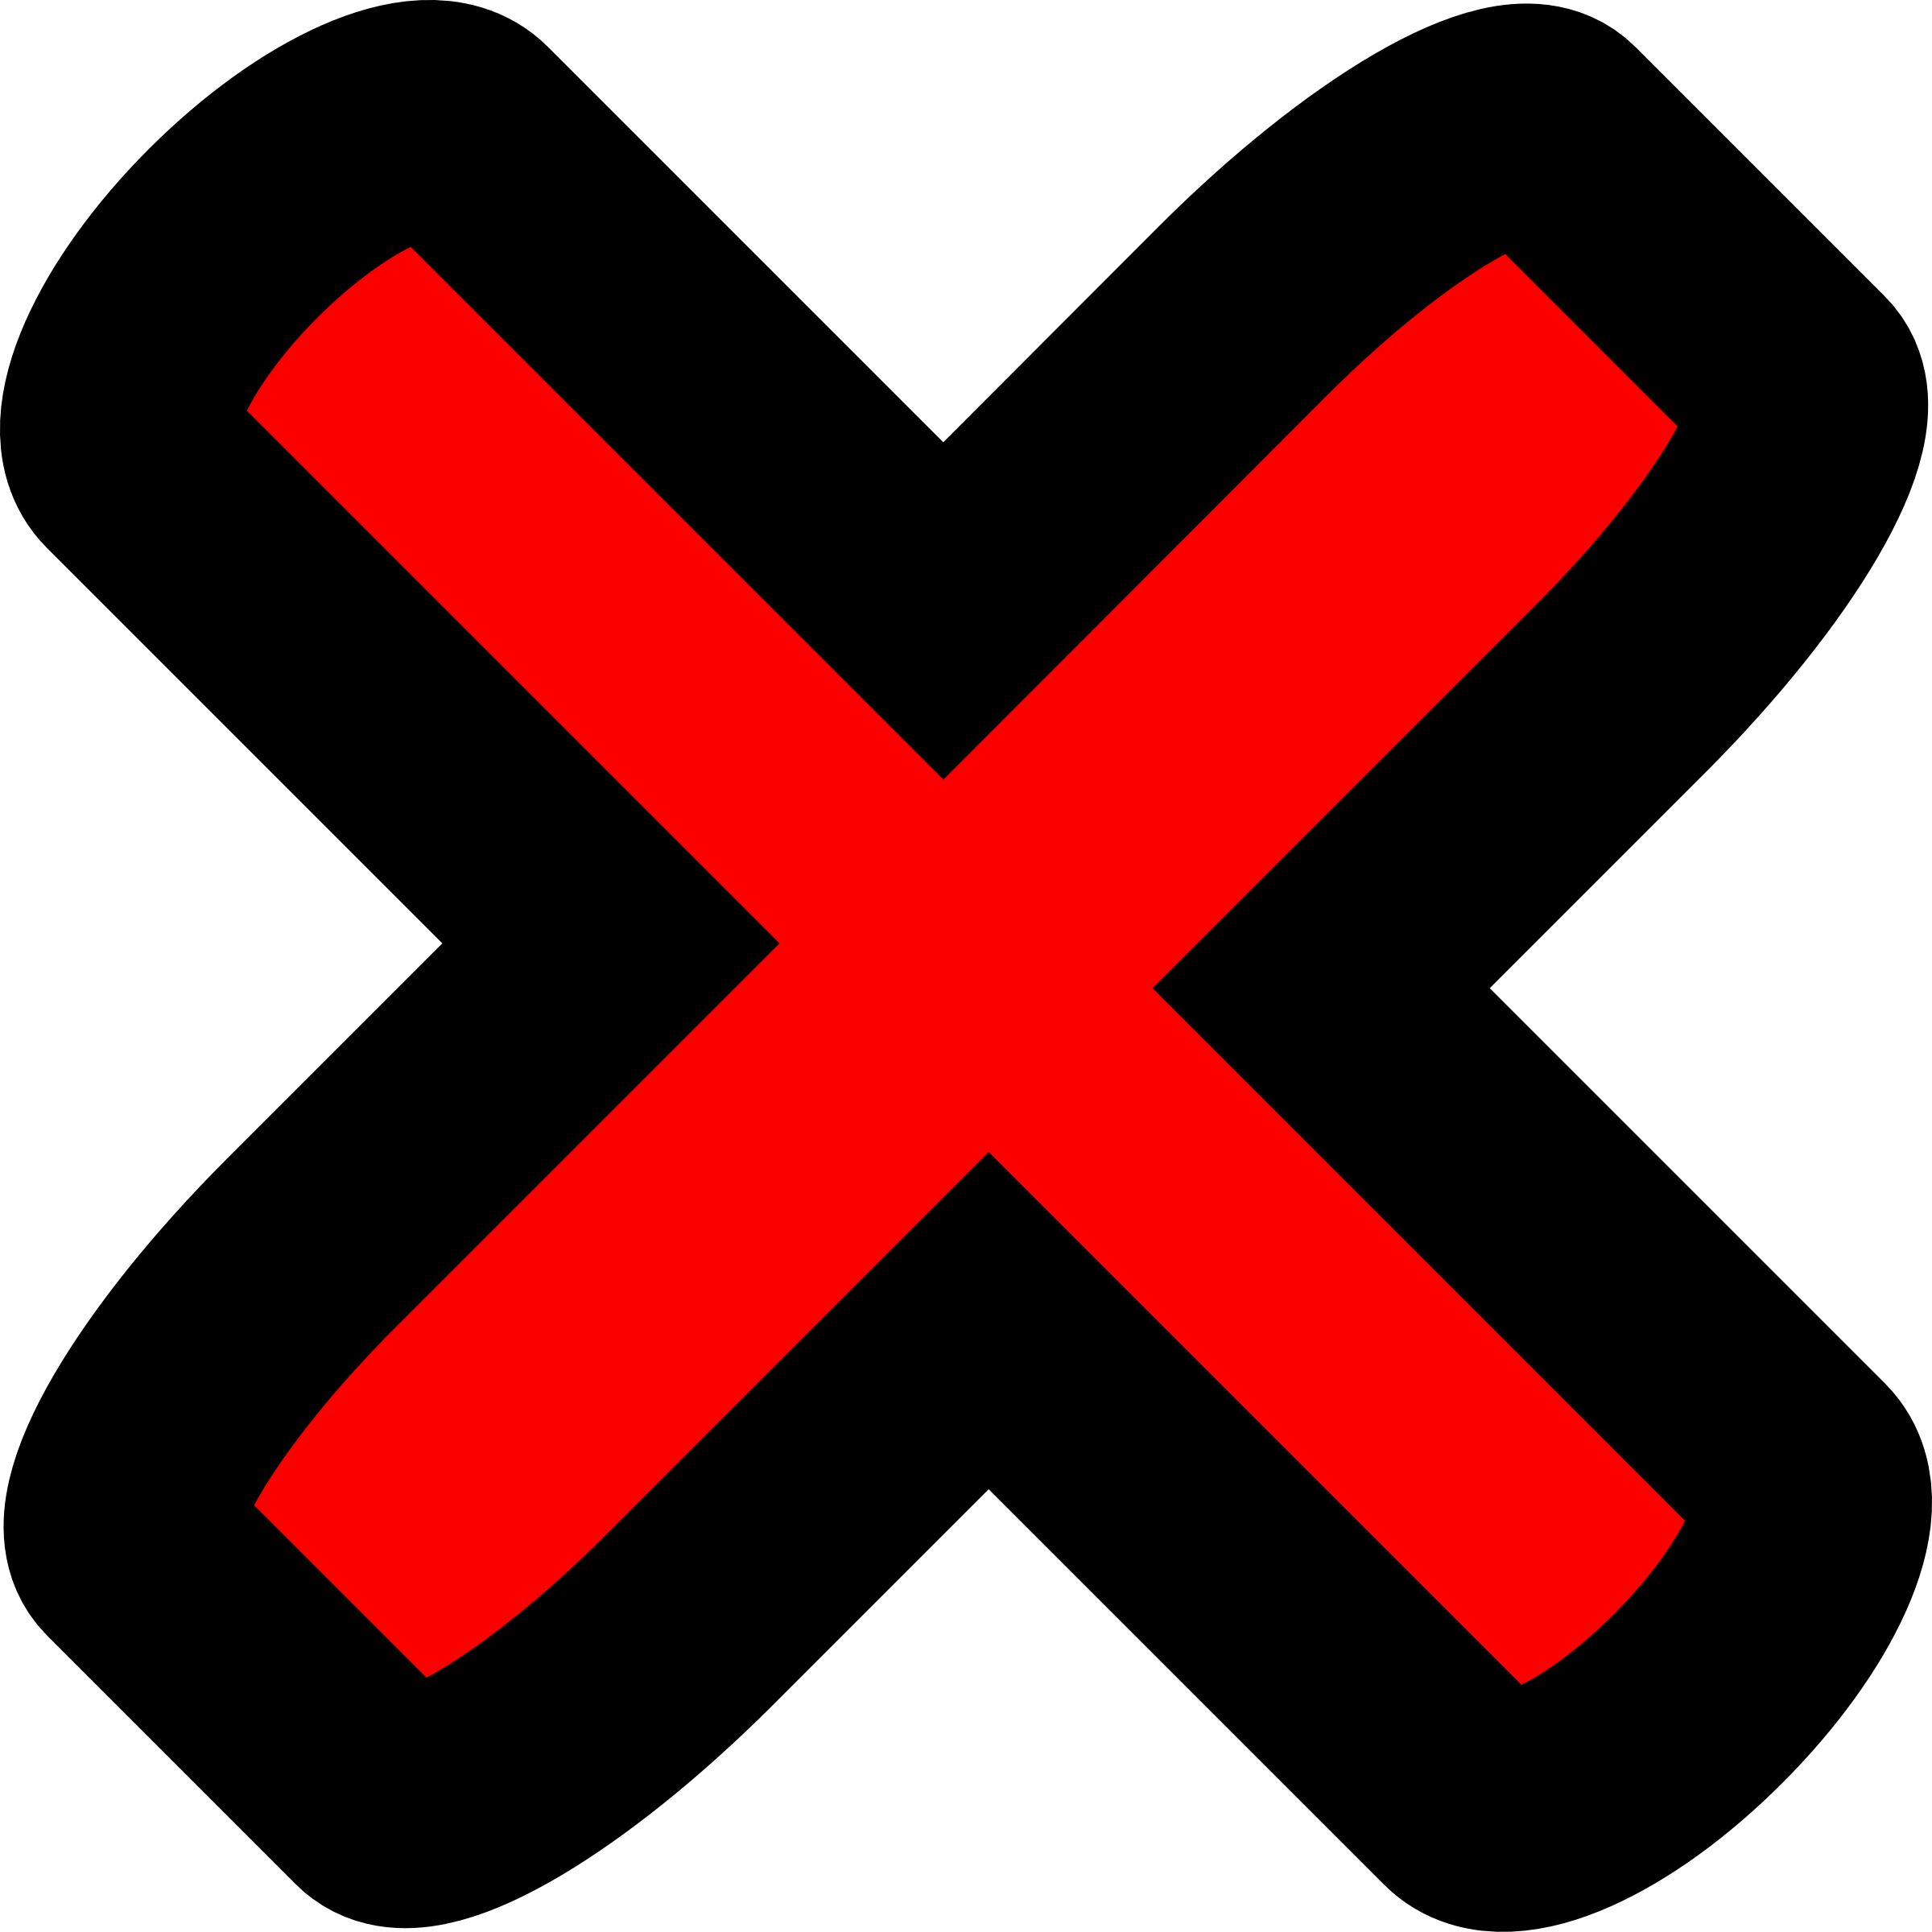 Image x icon. Красный крестик. Крестик знак. Крестик значок. Крестик неправильно.